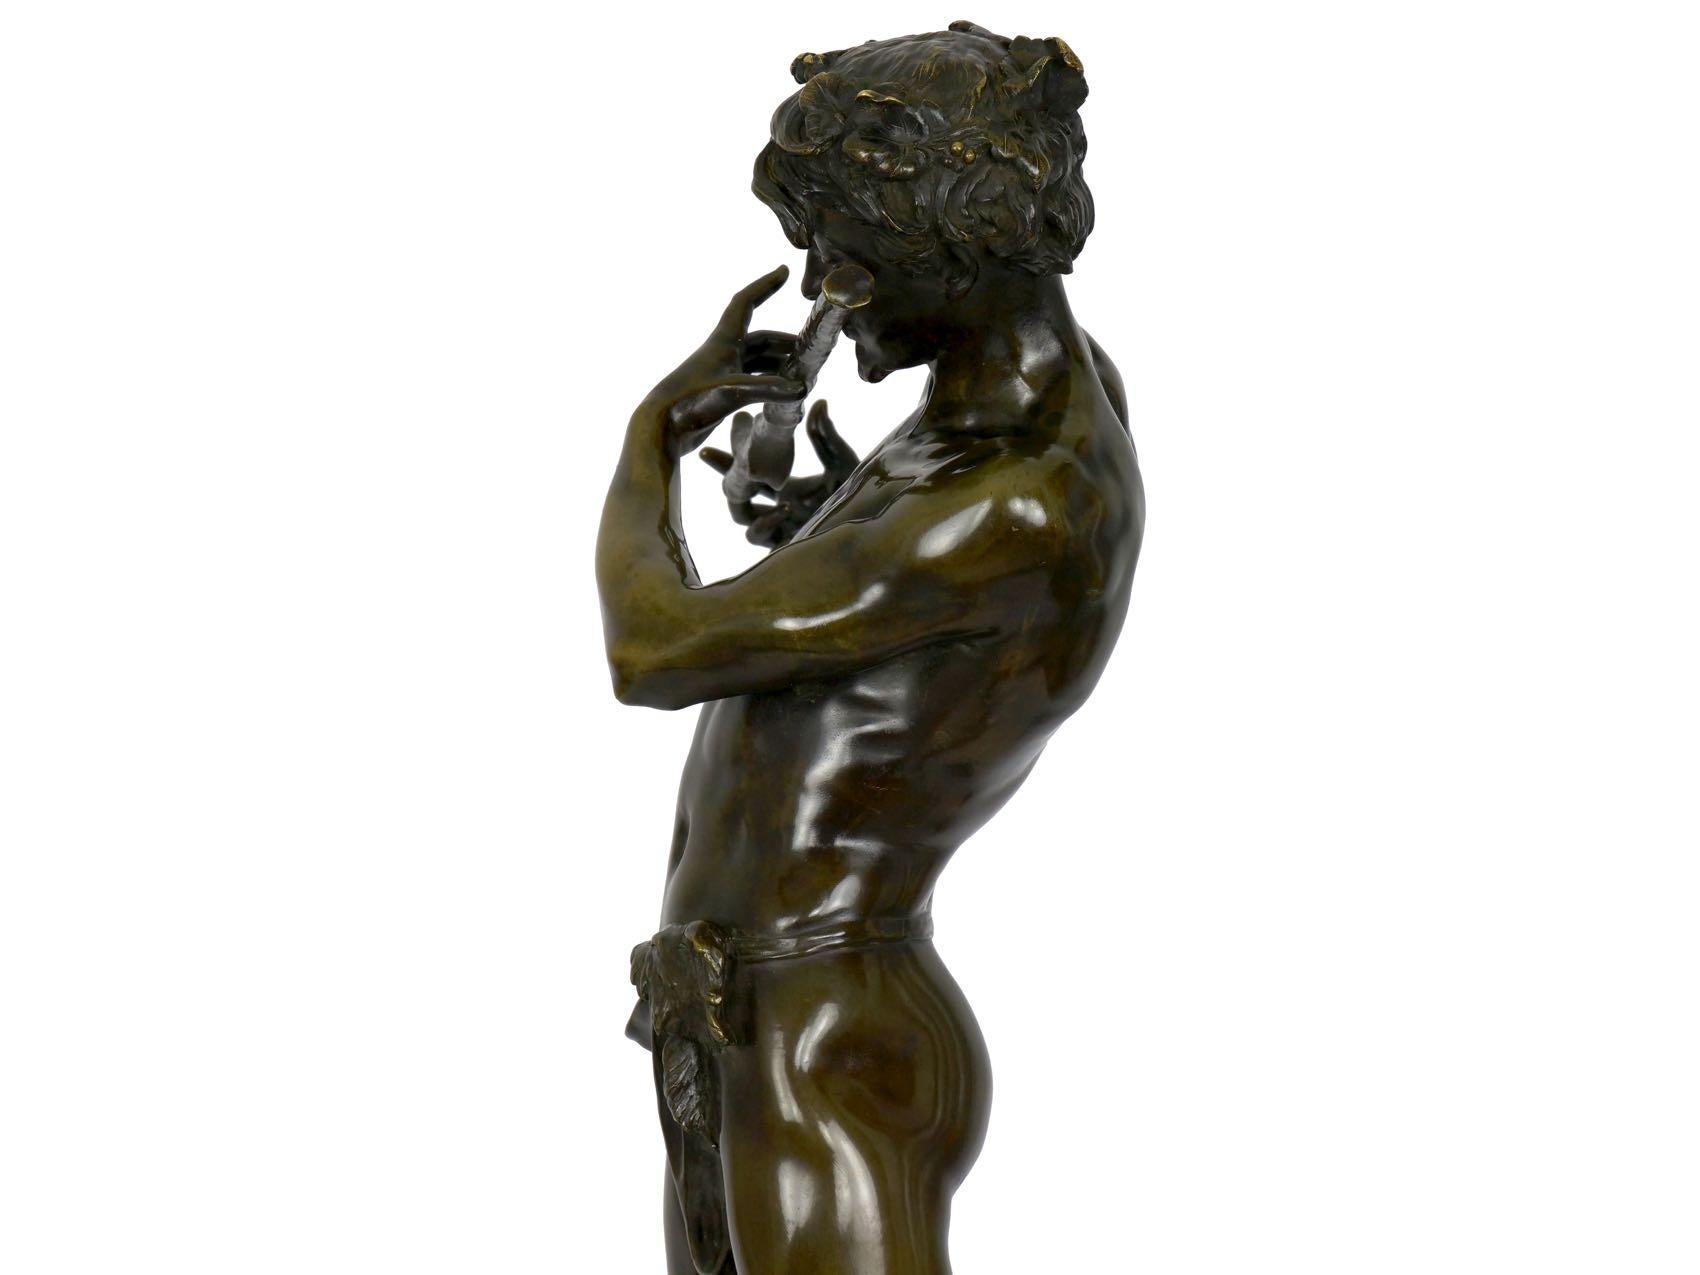 20th Century French Antique Bronze Sculpture “L’Improvisateur” by Felix Charpentier & Colin